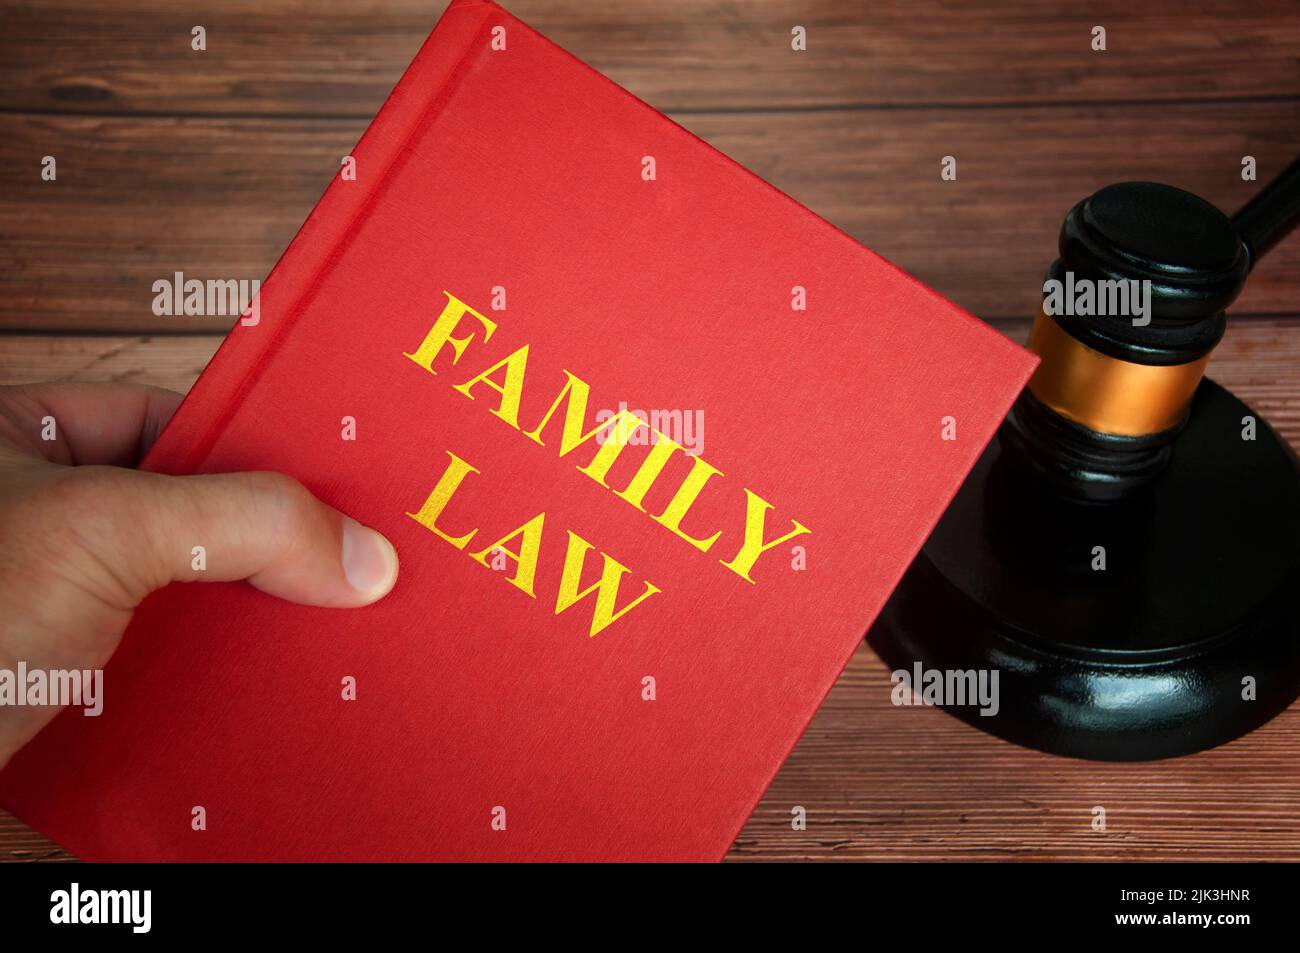 Familiengesetz Text auf Gesetz Buch mit Richter gavel auf Holzschreibtisch Hintergrund. Rechtskonzept Stockfoto